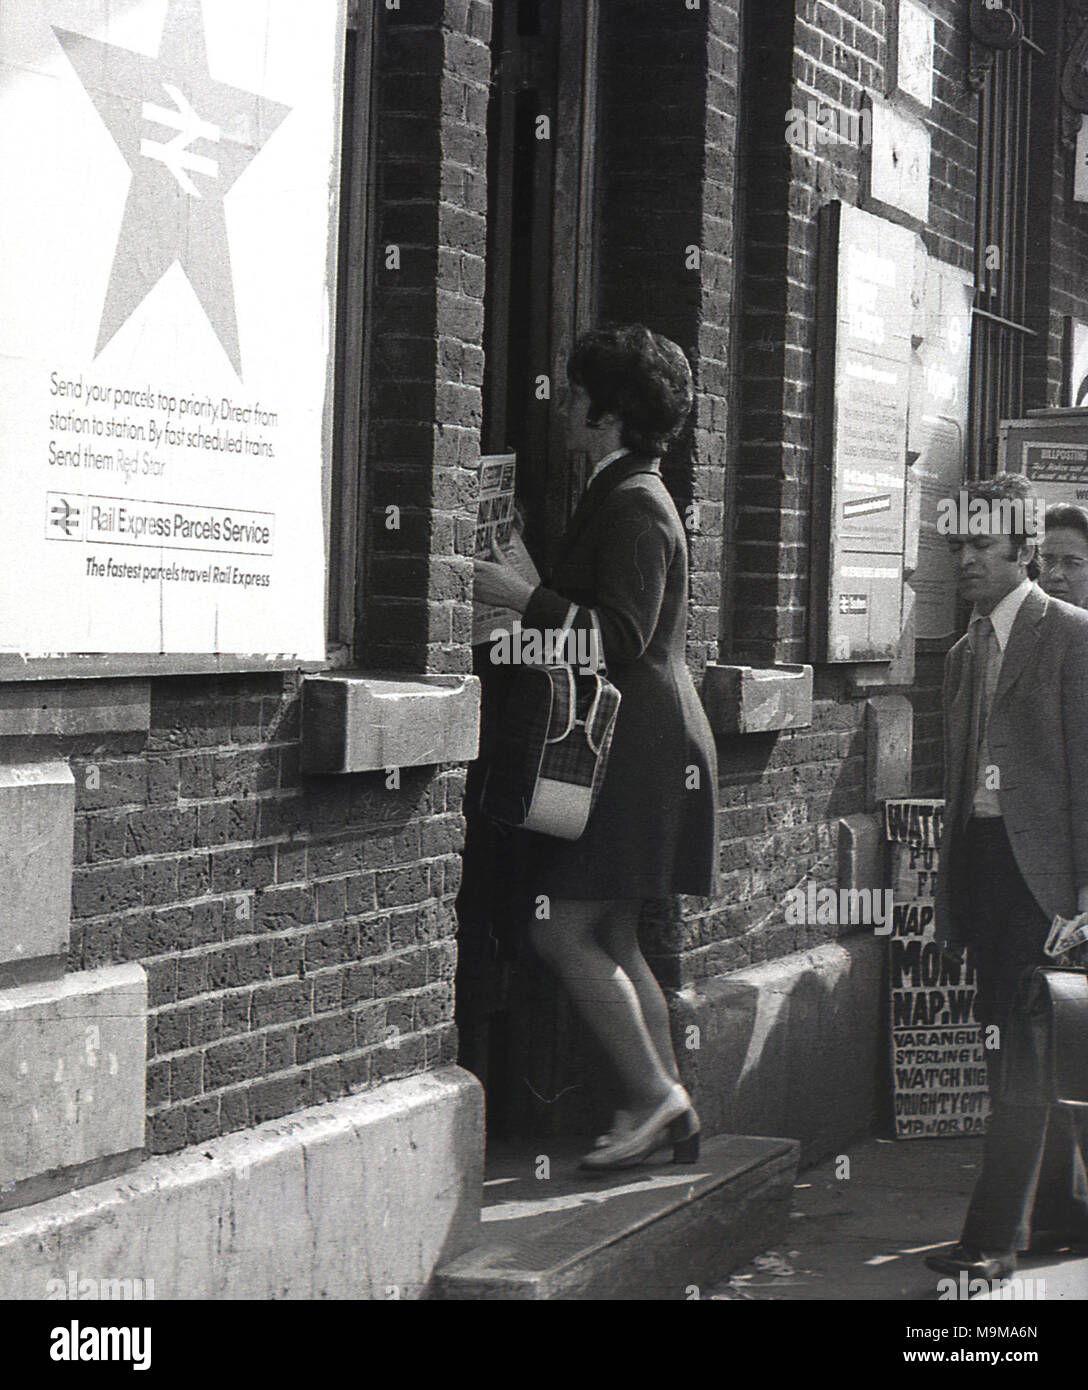 1970 s, historischen, Bahnreisende Eingabe neuer Cross Bahnhof in South East London, England. Zu diesem Zeitpunkt, Streiks und abgebrochen Züge wurden ein gemeinsames Auftreten auf der British Rail und in diesem Fall die Plattformen waren voll und Fahrgäste hatte außerhalb der Station zu warten, bevor sie eintreten. Stockfoto